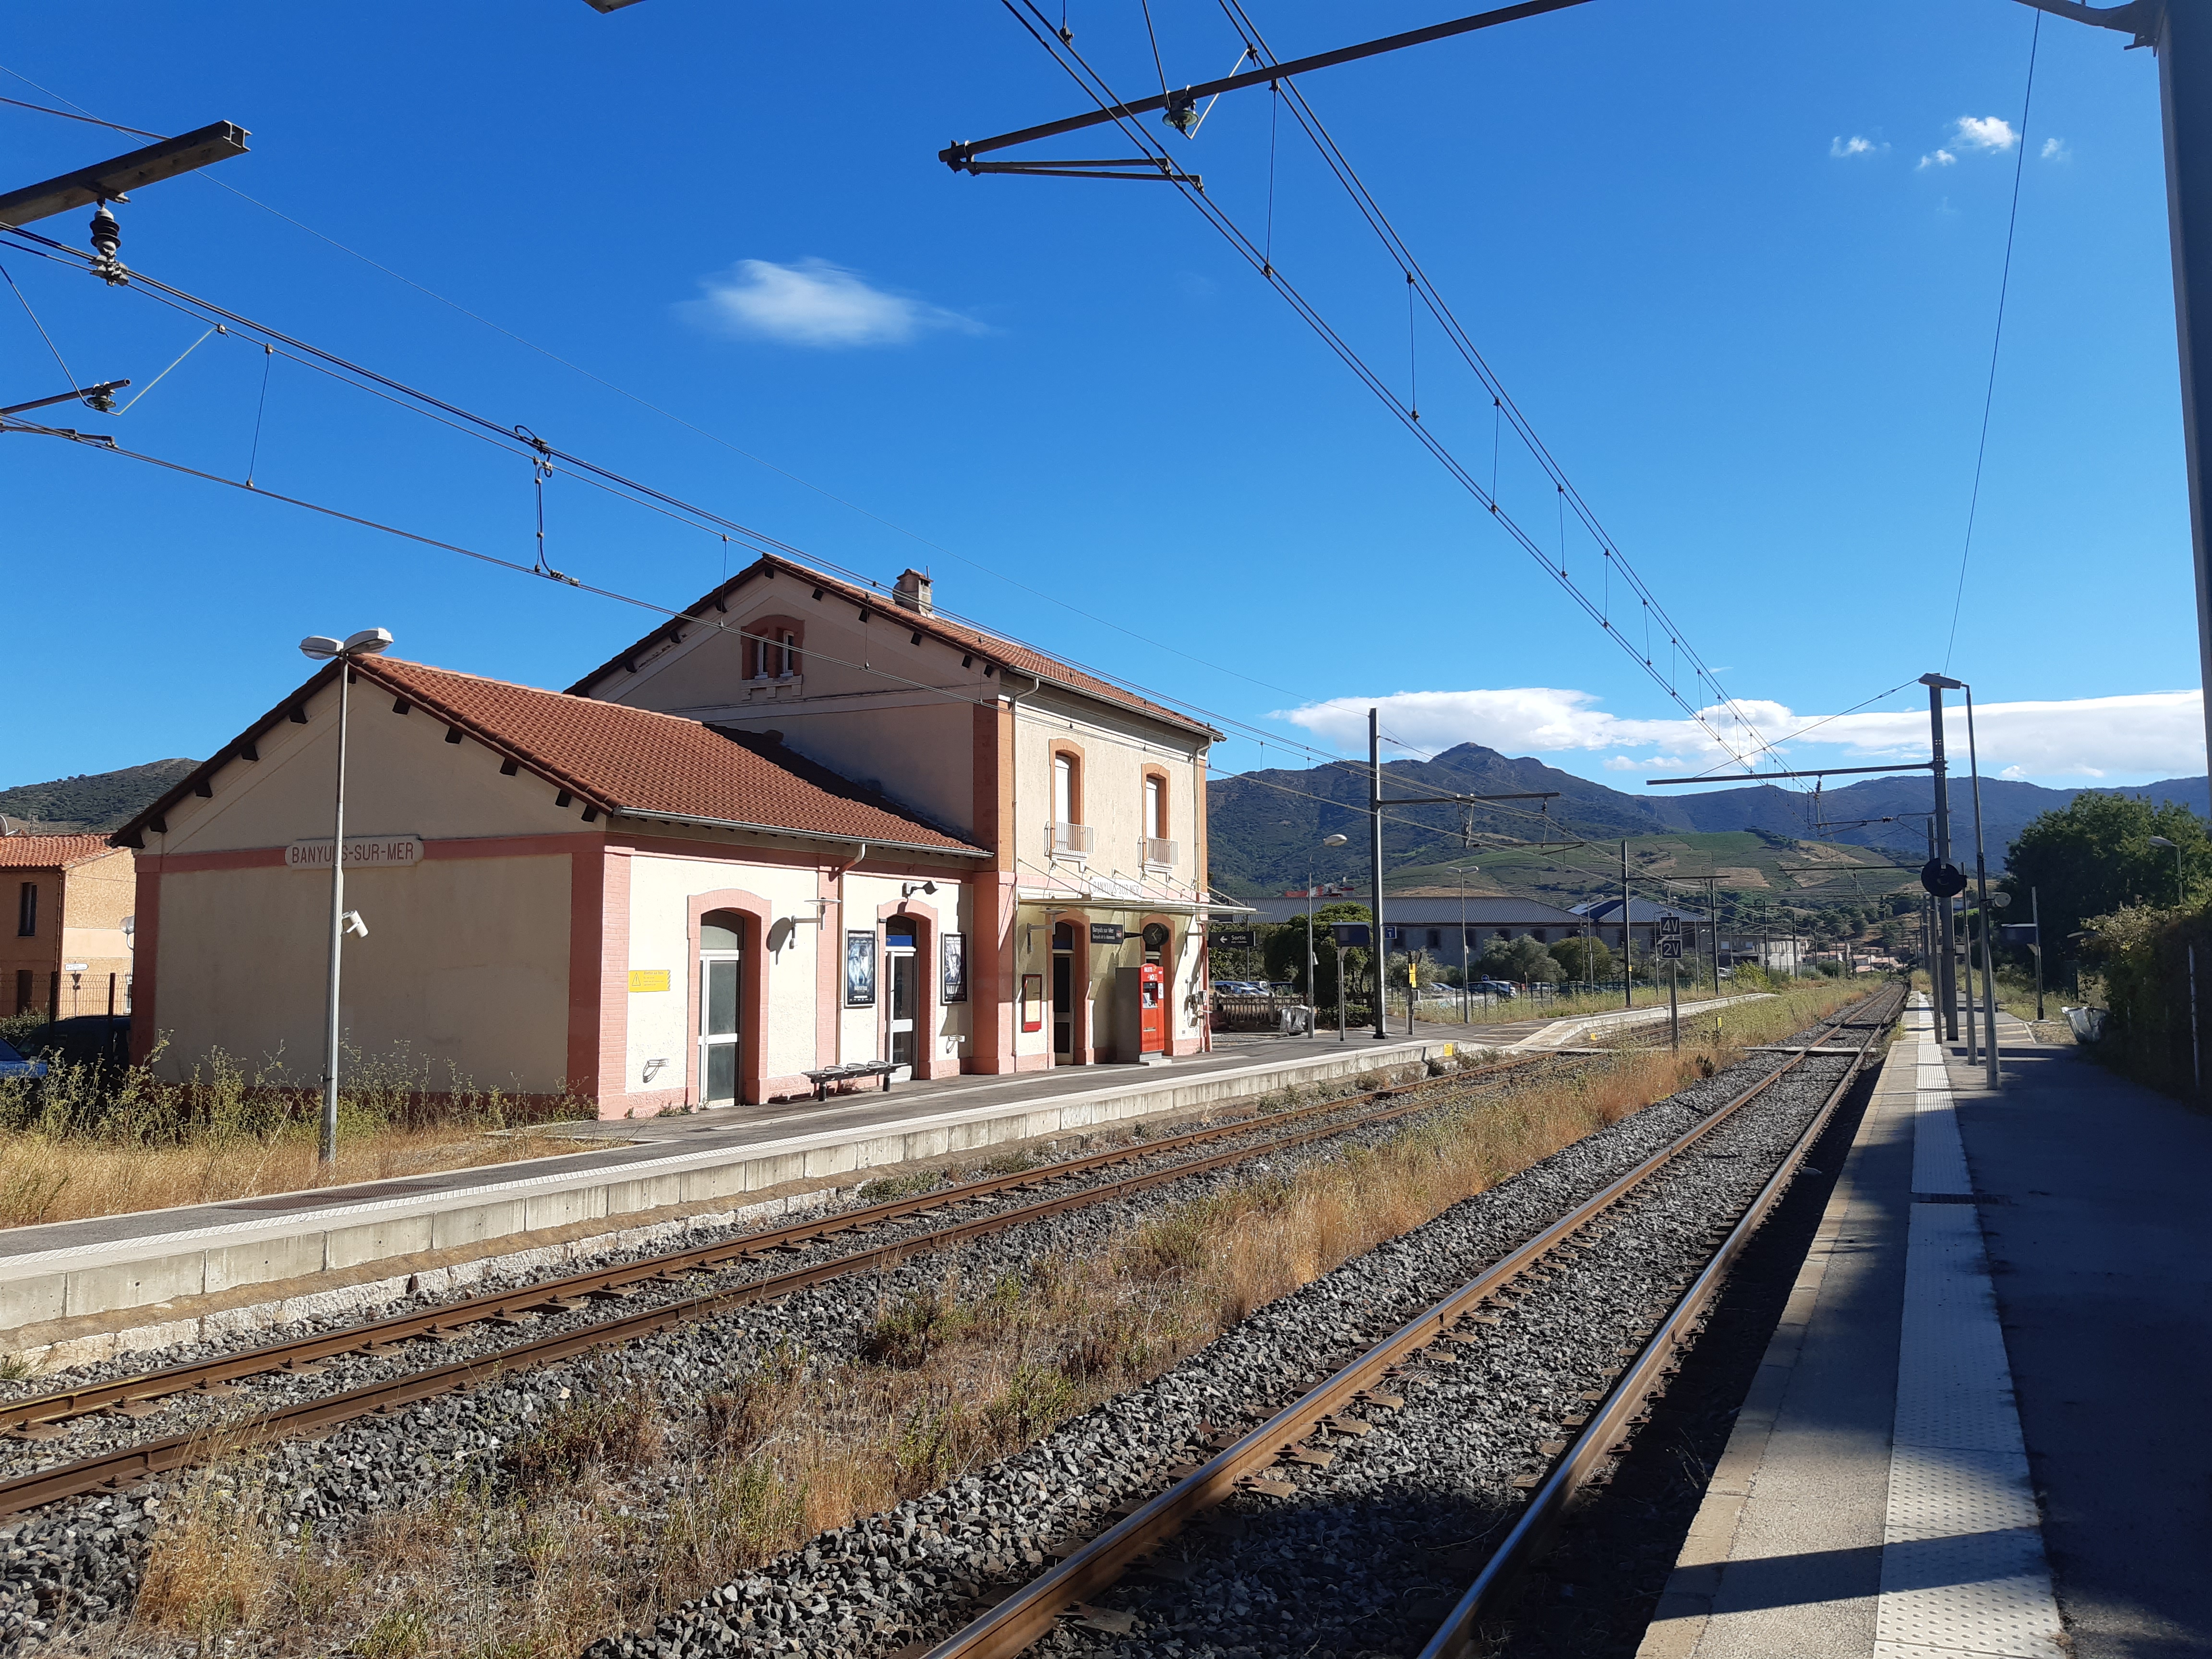 SNCF: Banyuls de la Marenda (Banyuls-sur-Mer)